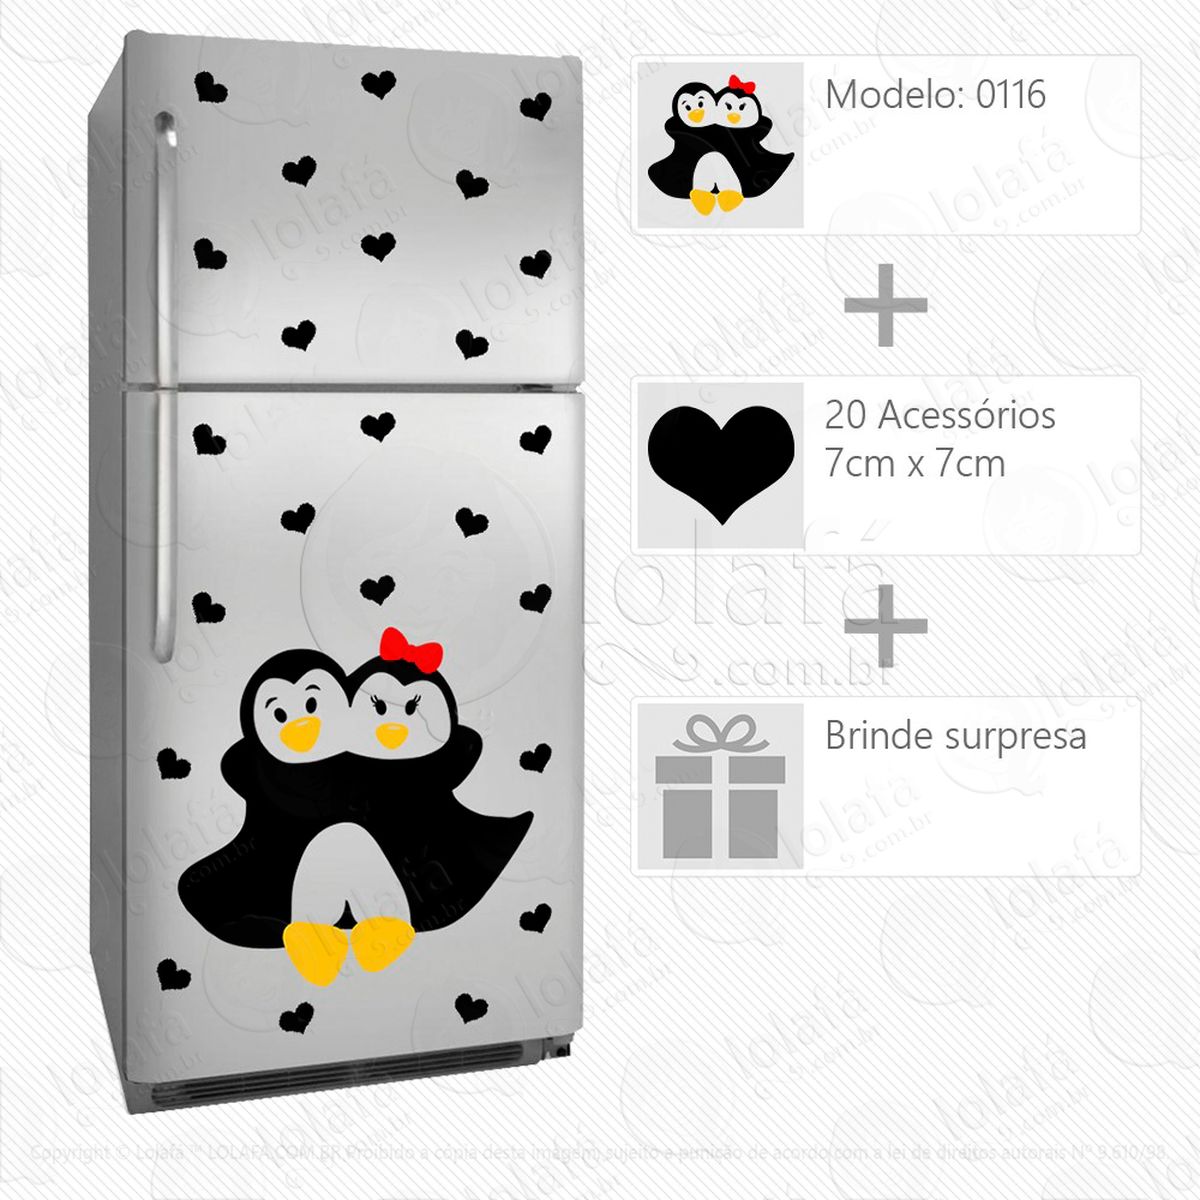 pinguins adesivo para geladeira e frigobar - mod:116